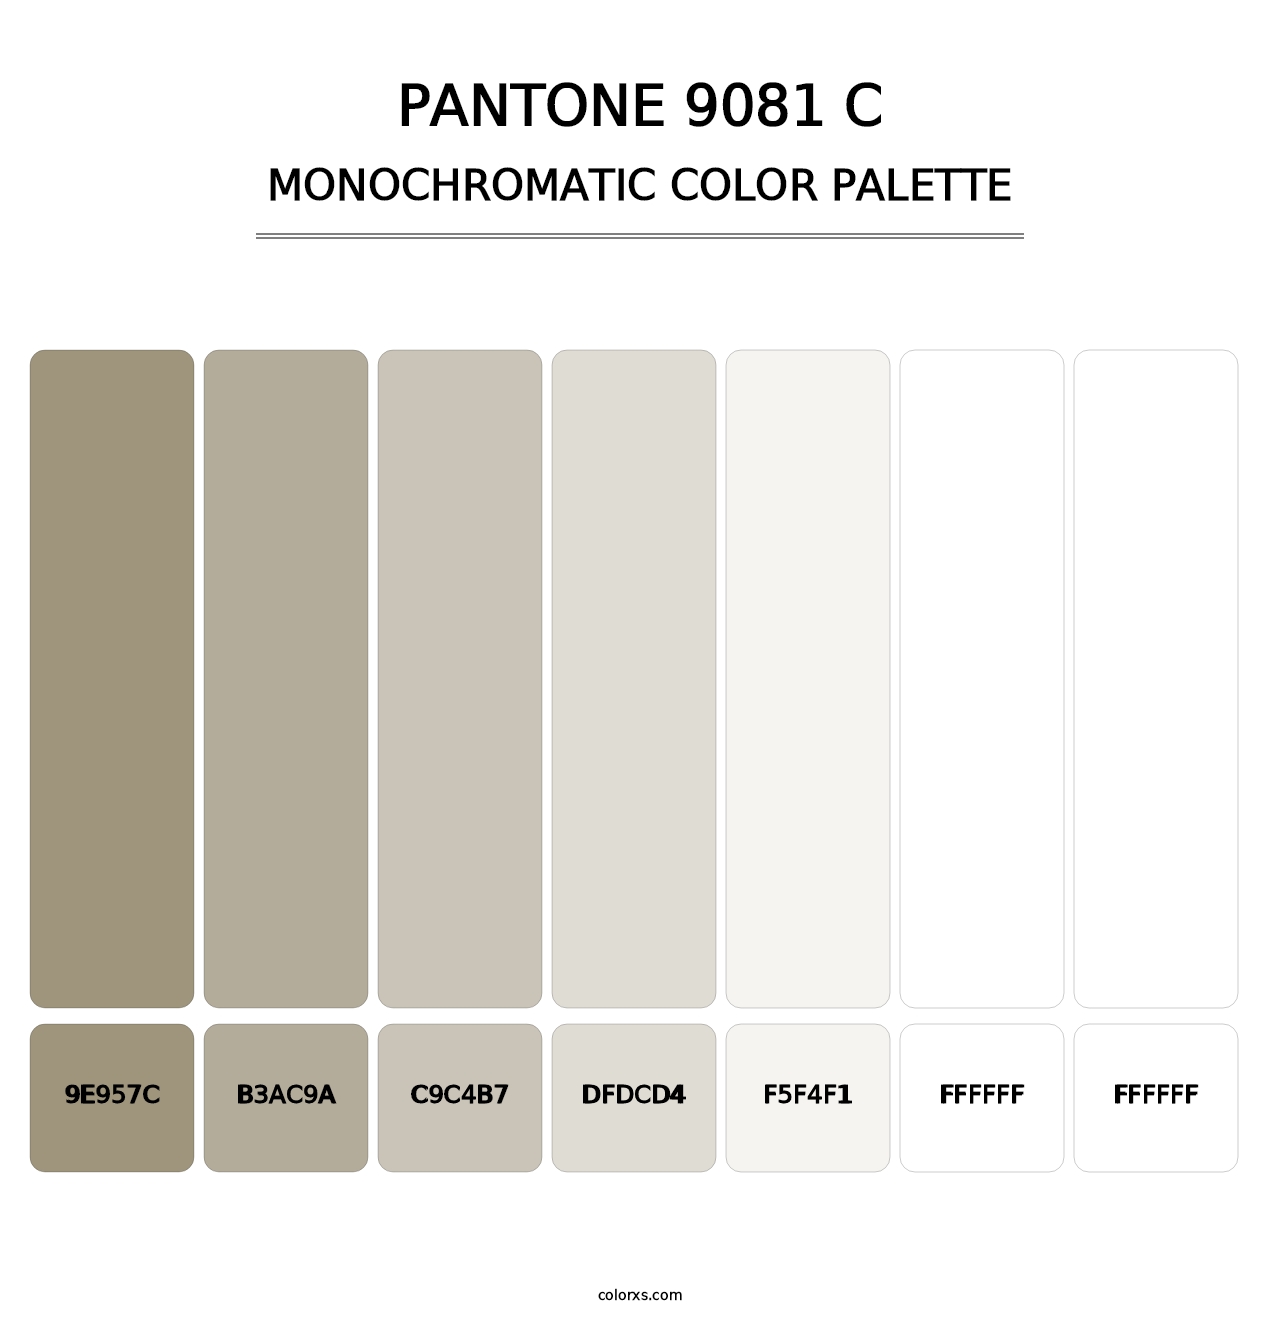 PANTONE 9081 C - Monochromatic Color Palette